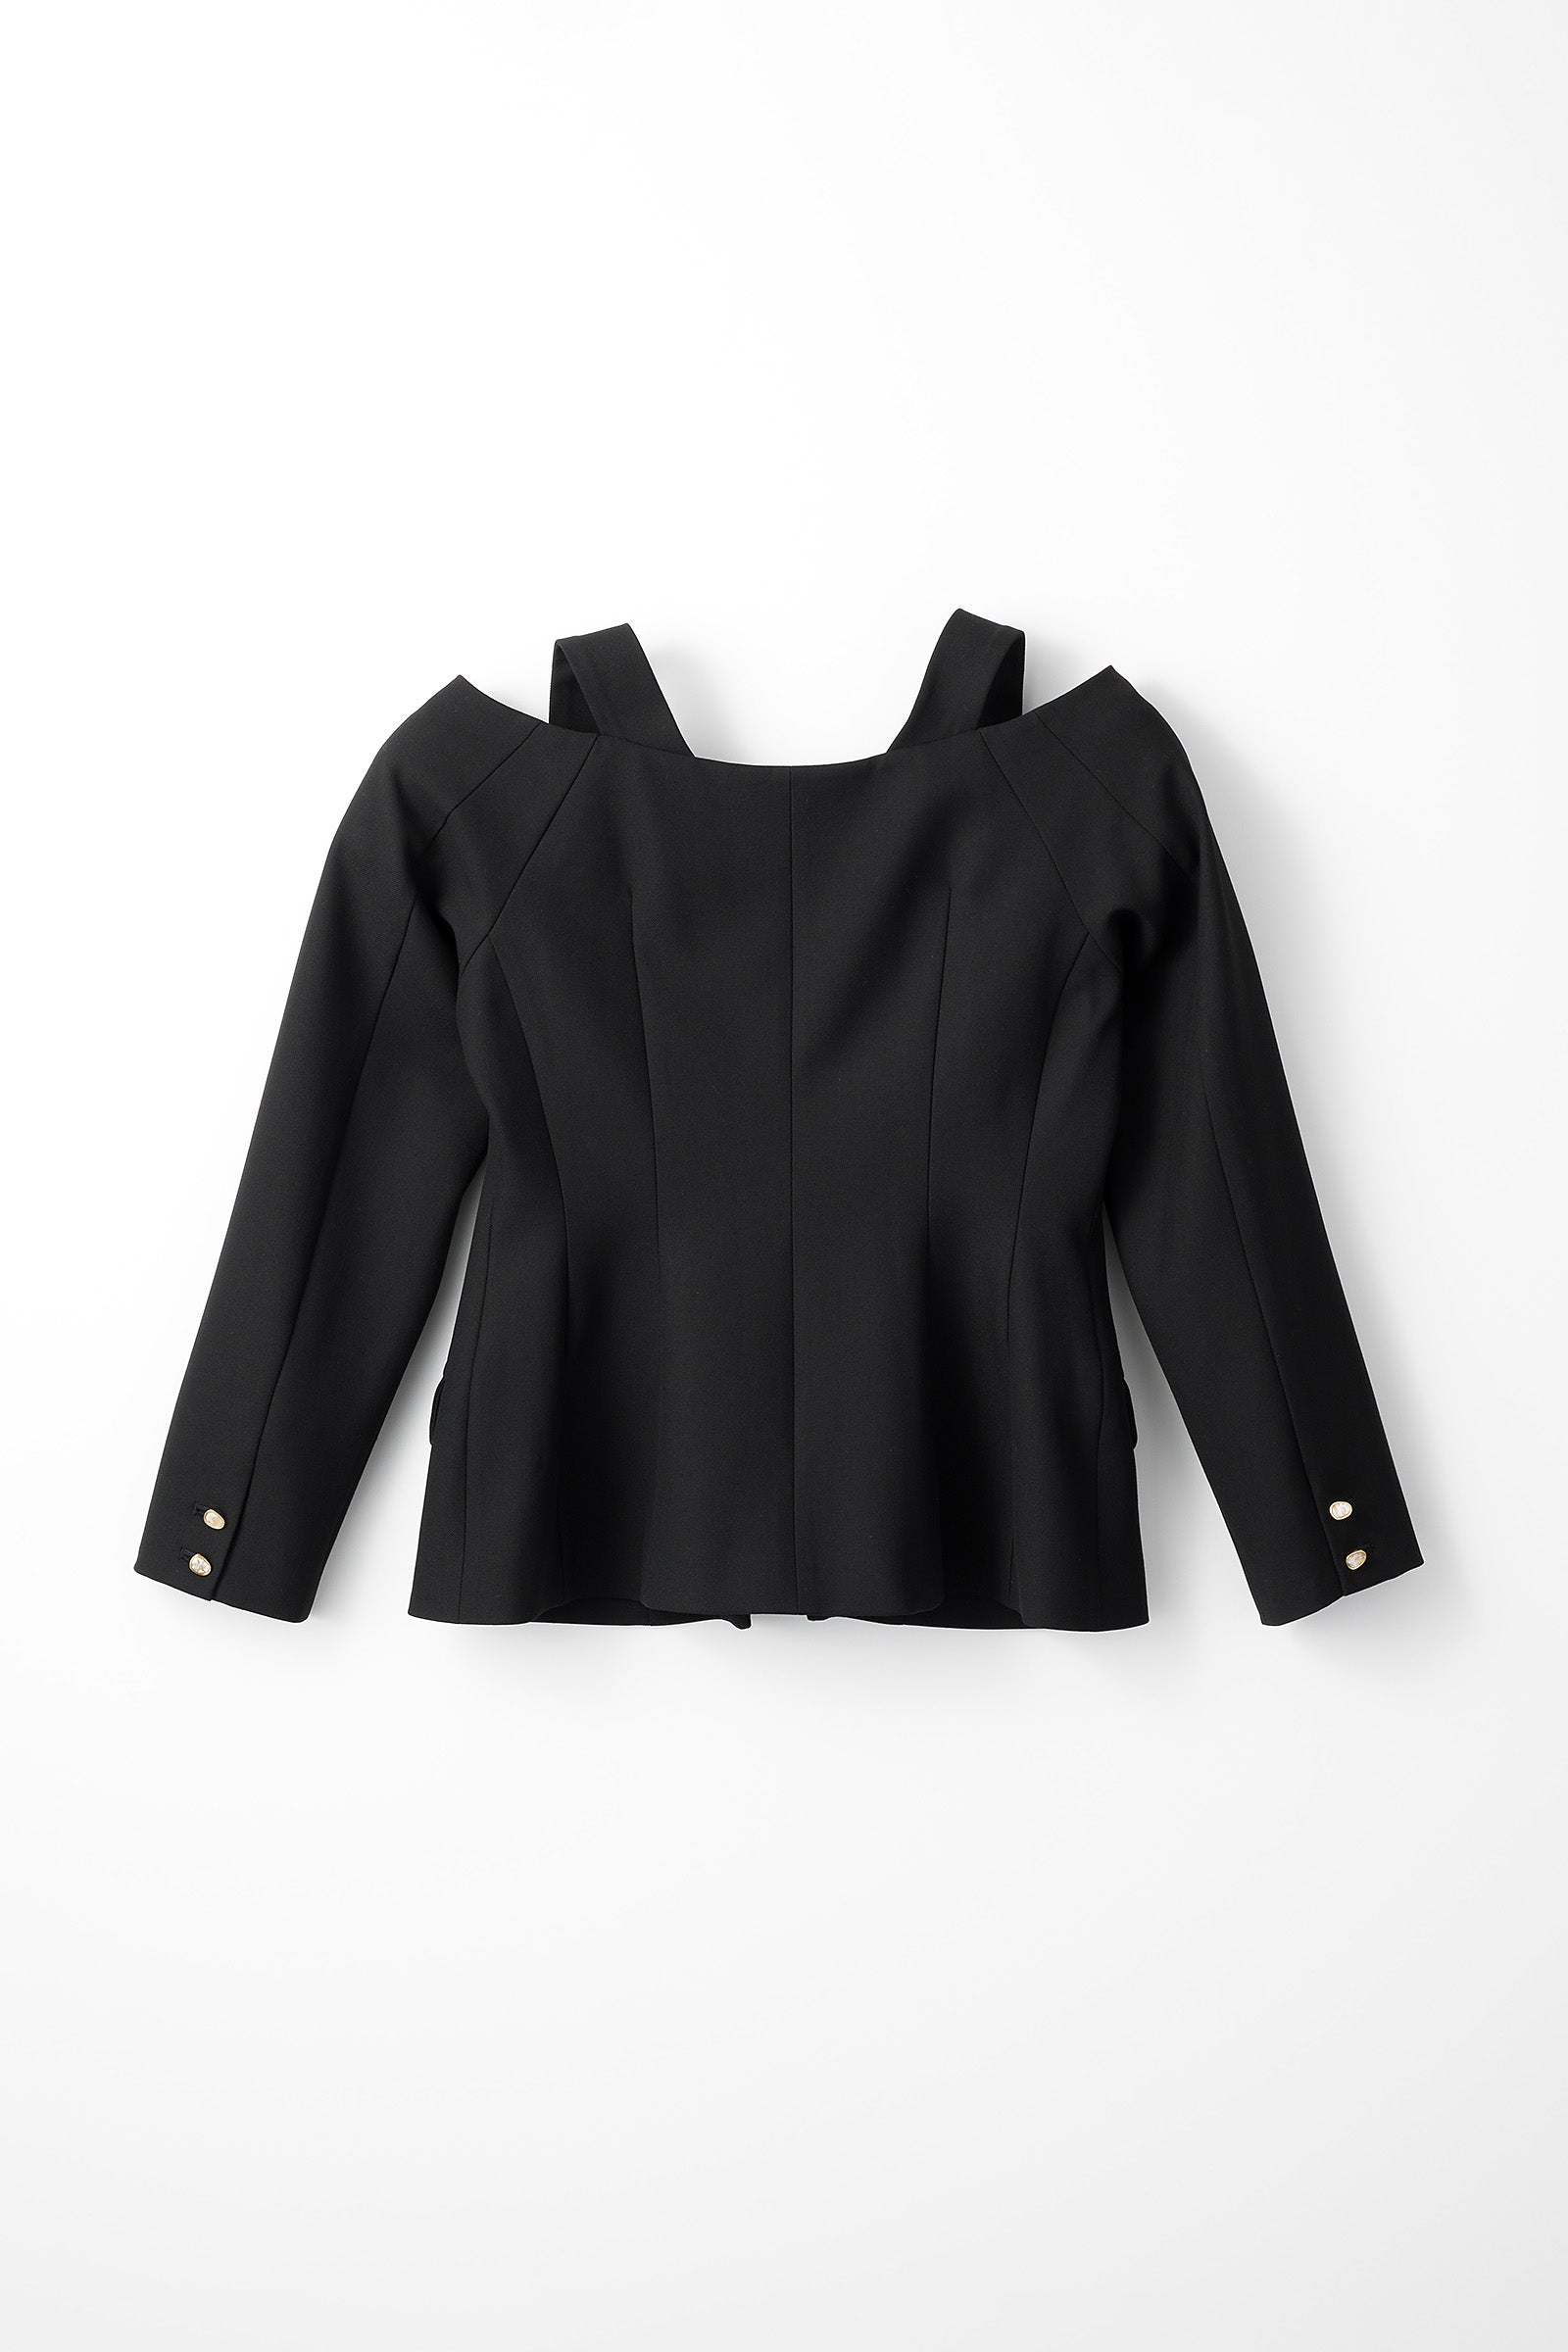 Melt off shoulder jacket (Black)